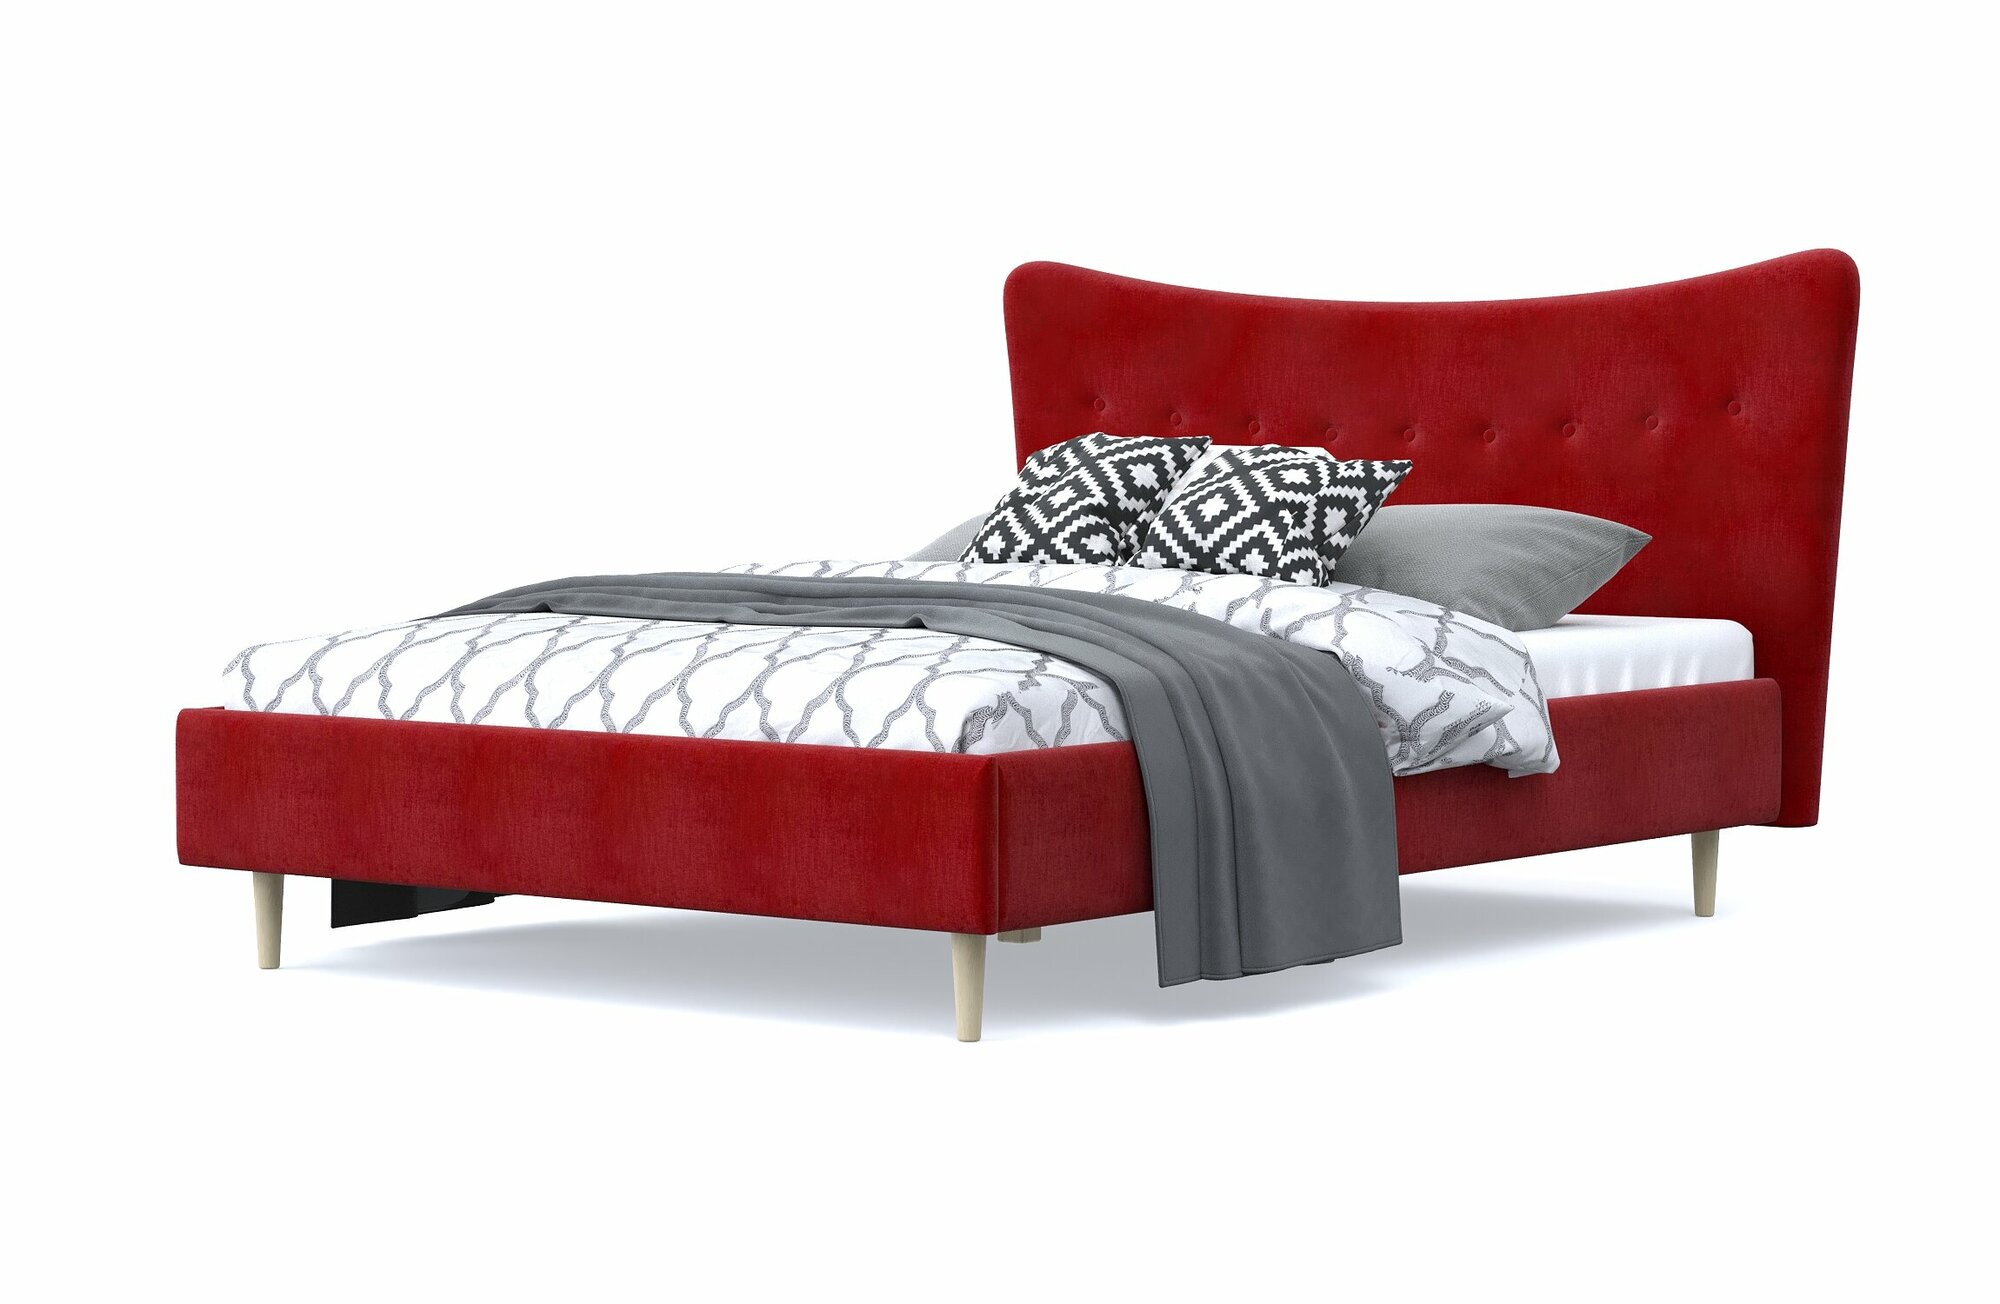 Двуспальная кровать финна 140х200, с мягким изголовьем, красный, шенилл, деревянная, на ножках